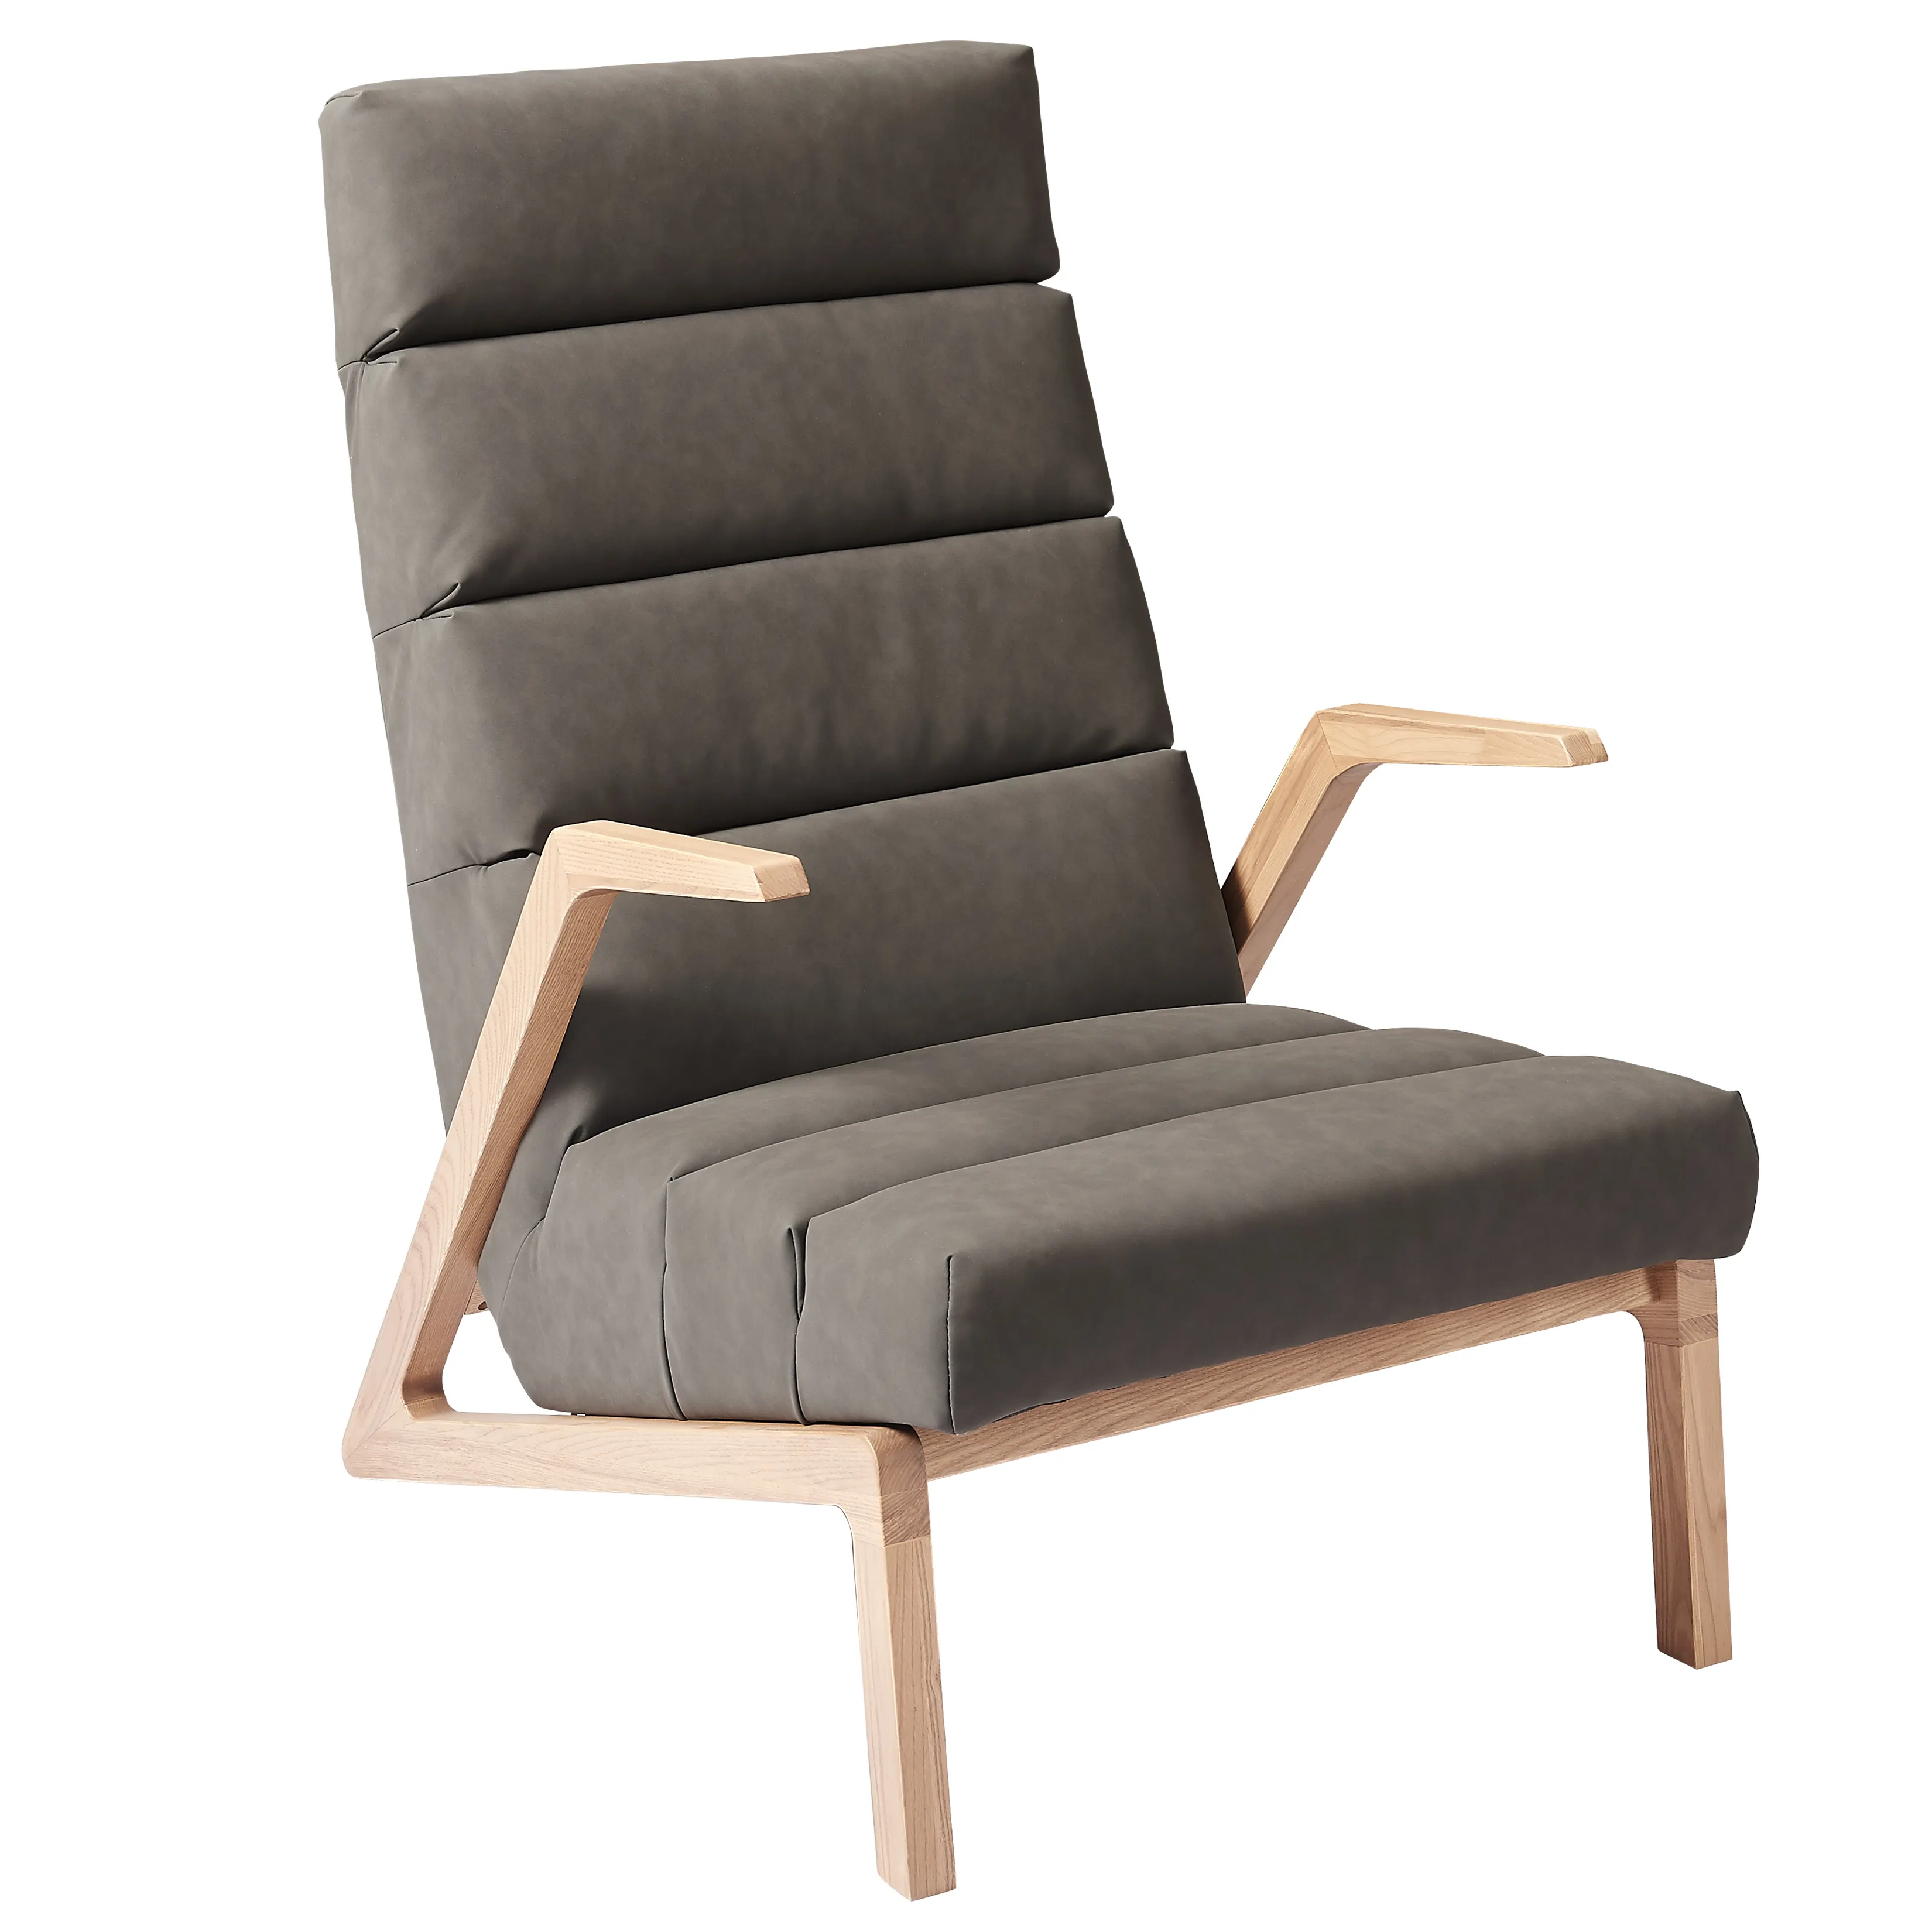 Досуг откидывающееся кресло с твердой Ash деревянная рамка Середина столетия современном стиле одноместное кресло-диван в простом стиле для гостиной, спальни, обеденный стол